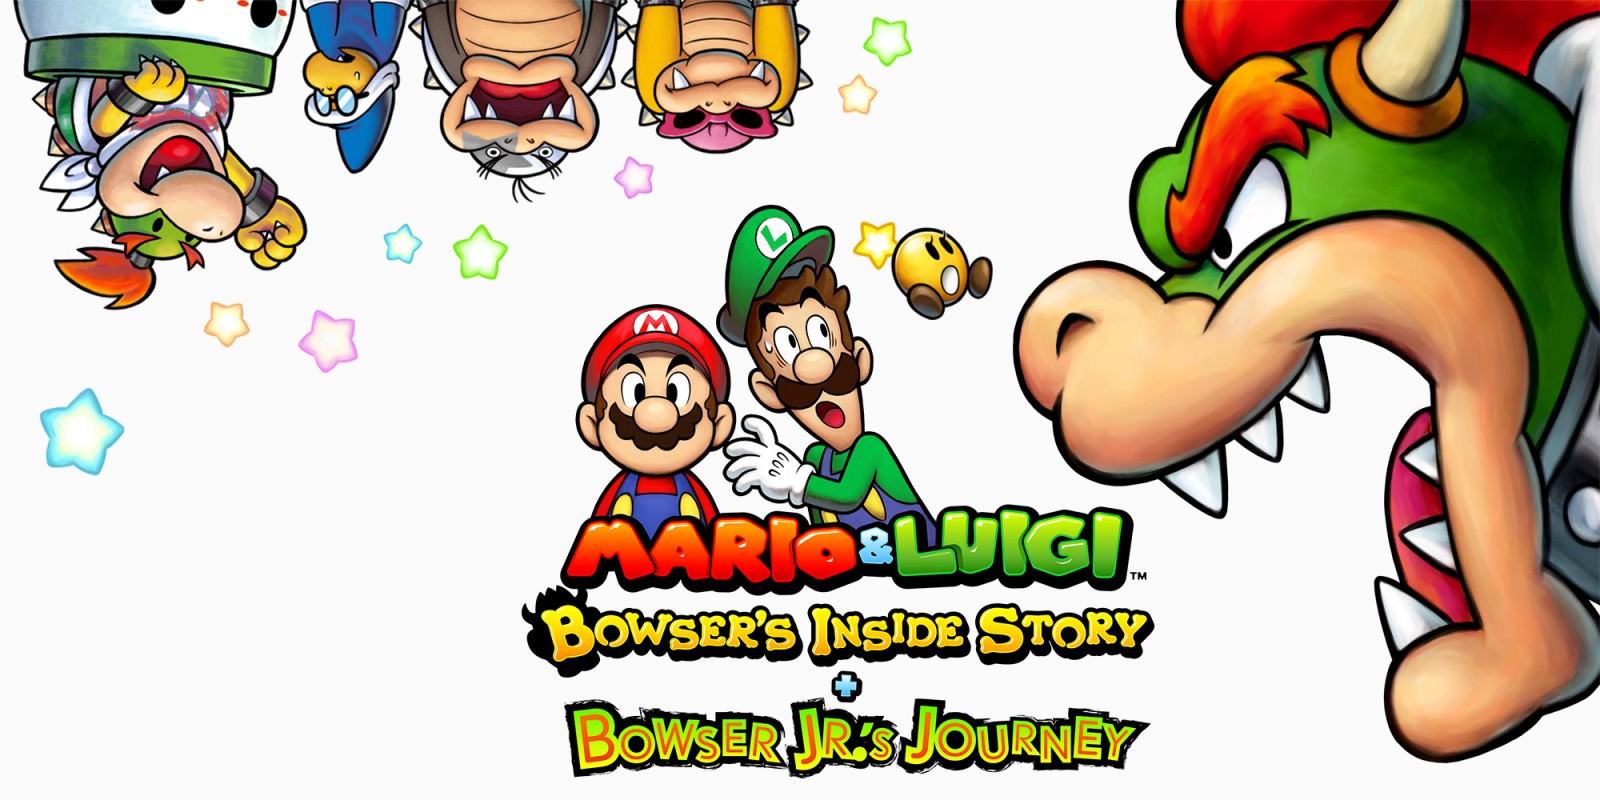 Mario & luigi bowser’s inside story + bowser jr’s journey